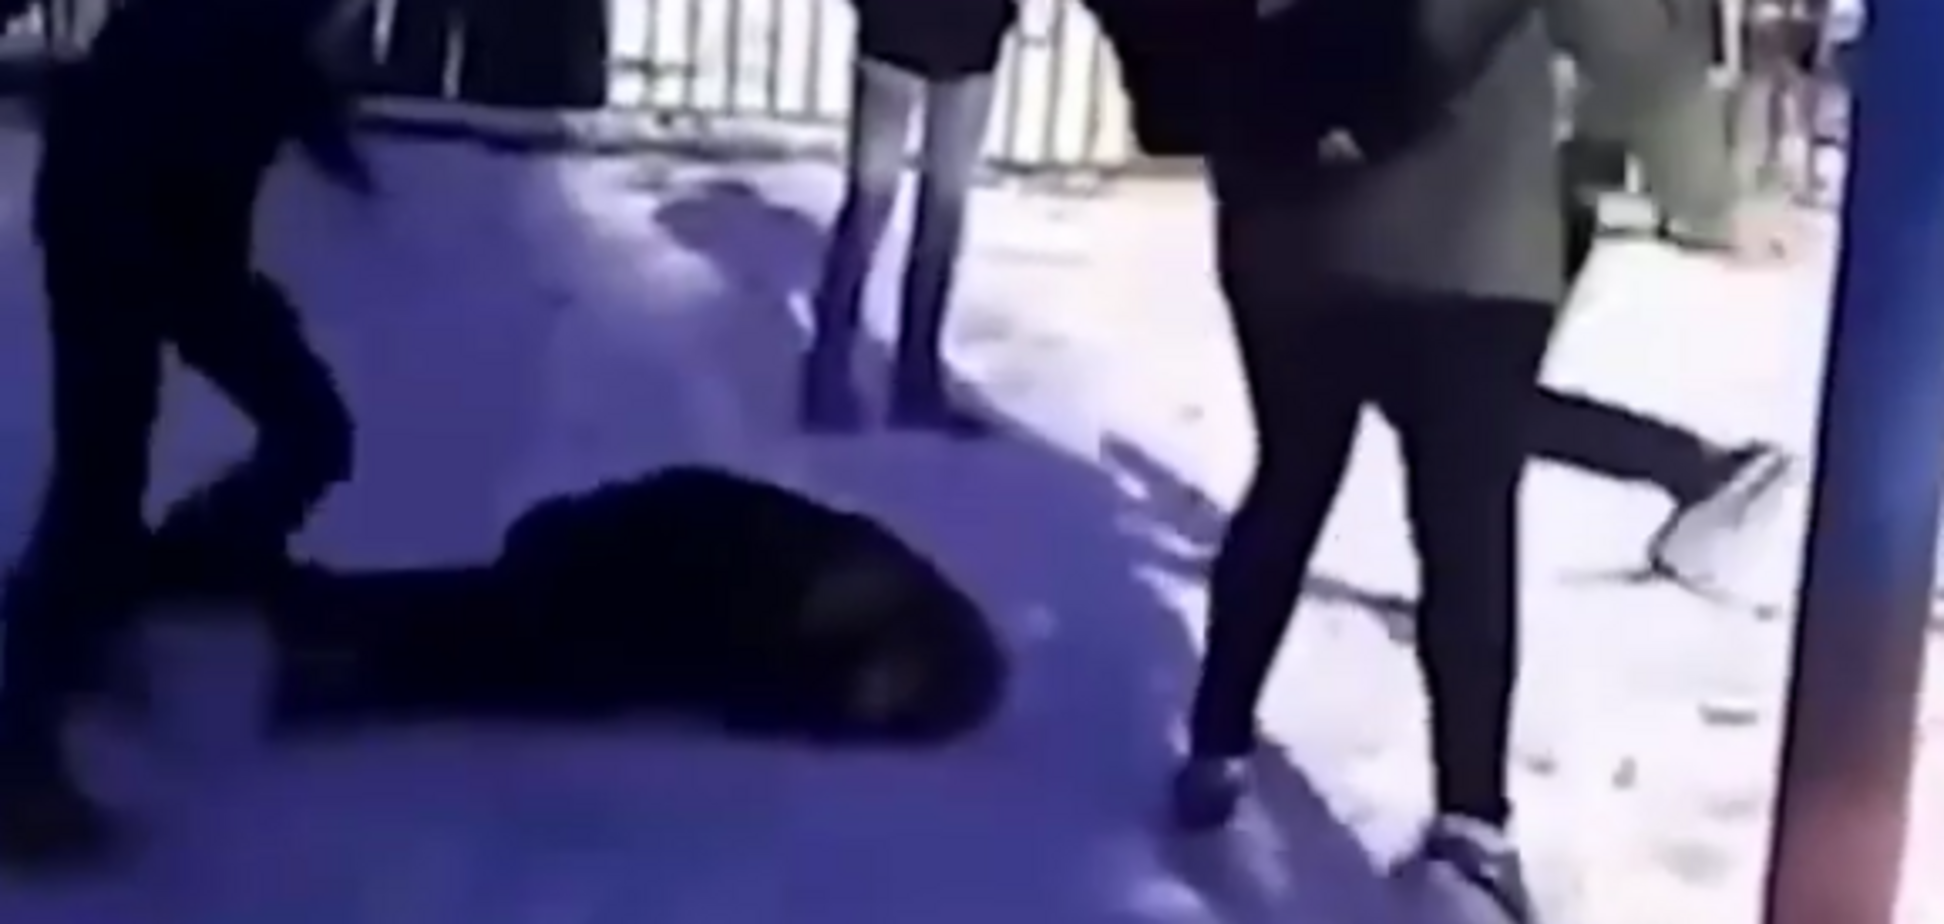 Прыгали на голове: в России подростки забили до полусмерти школьника. Видео (18+)